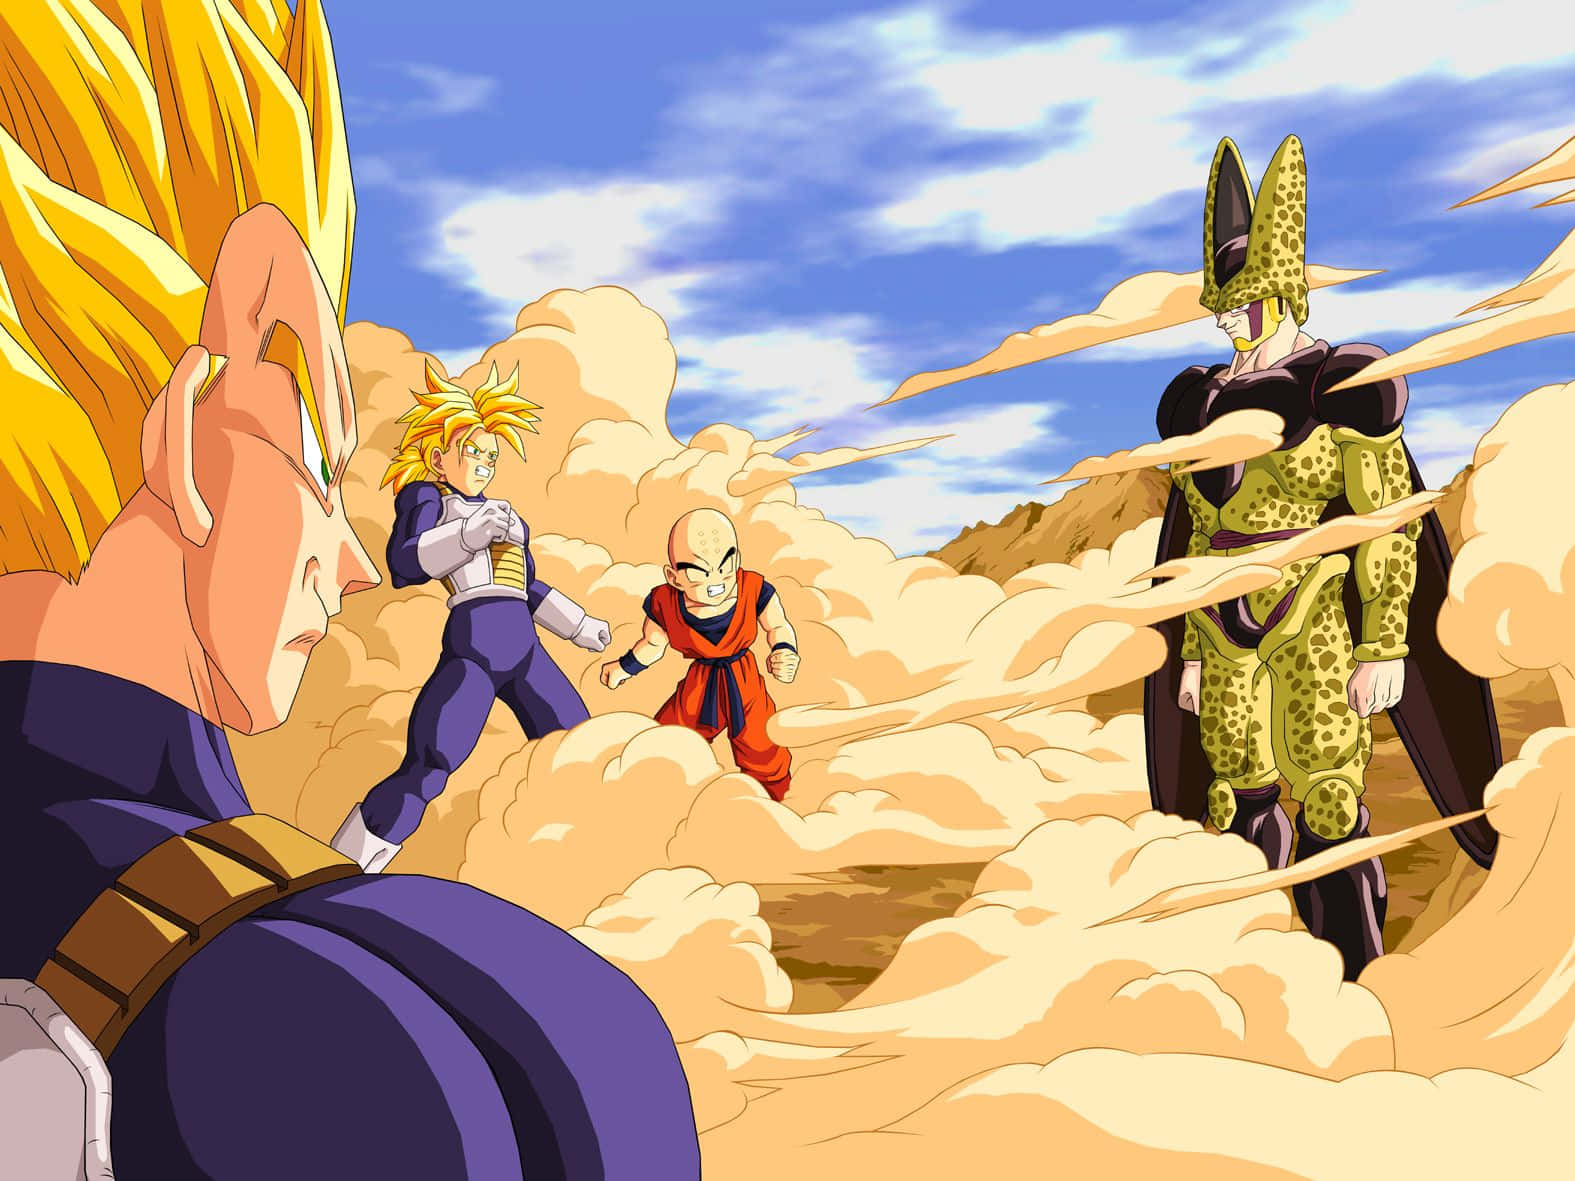 Caption: The Ultimate Showdown: Goku vs Vegeta in Dragon Ball Z